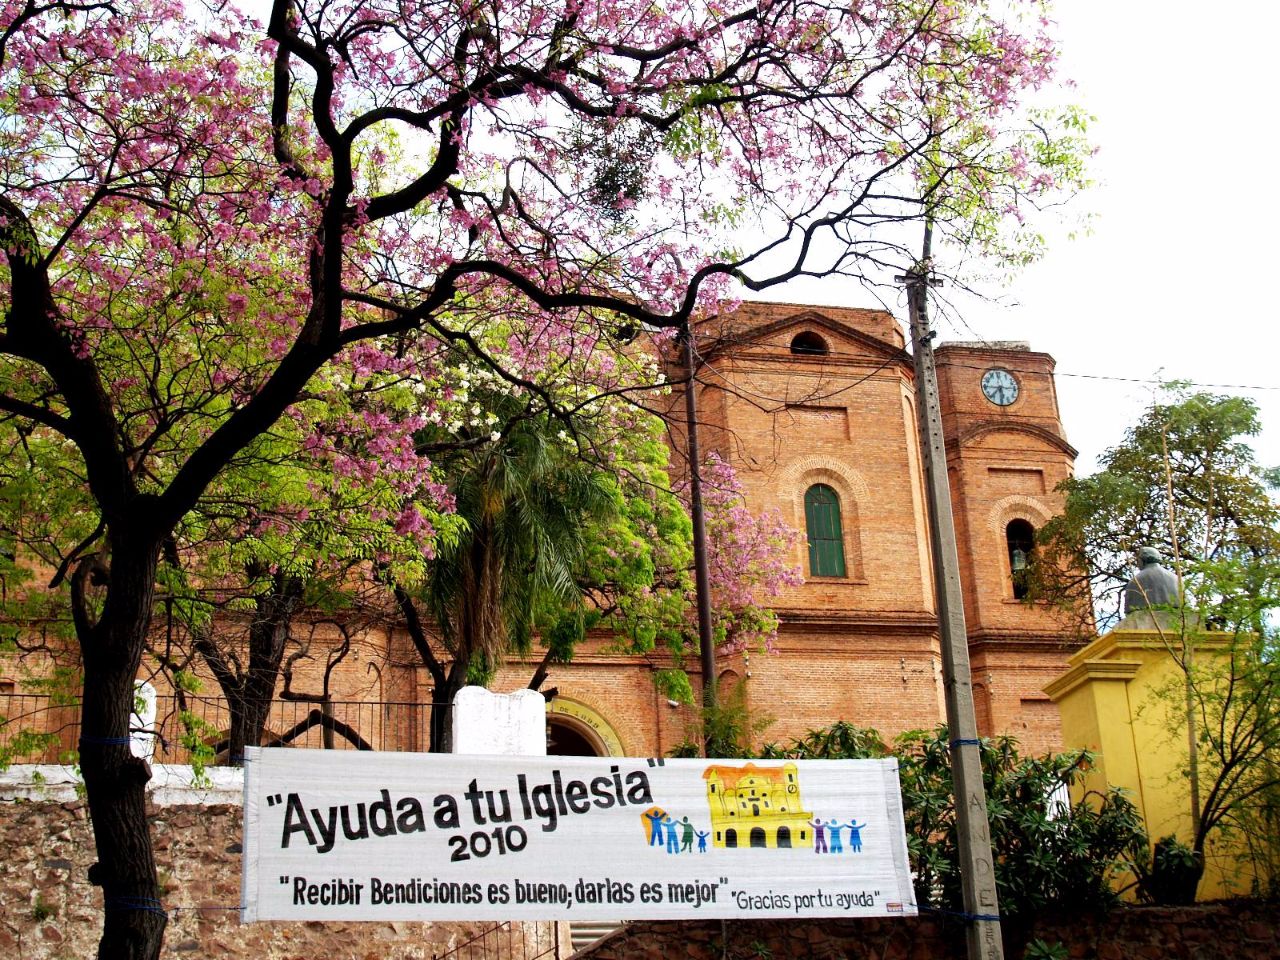 Церковь  Воплощения Асунсьон, Парагвай